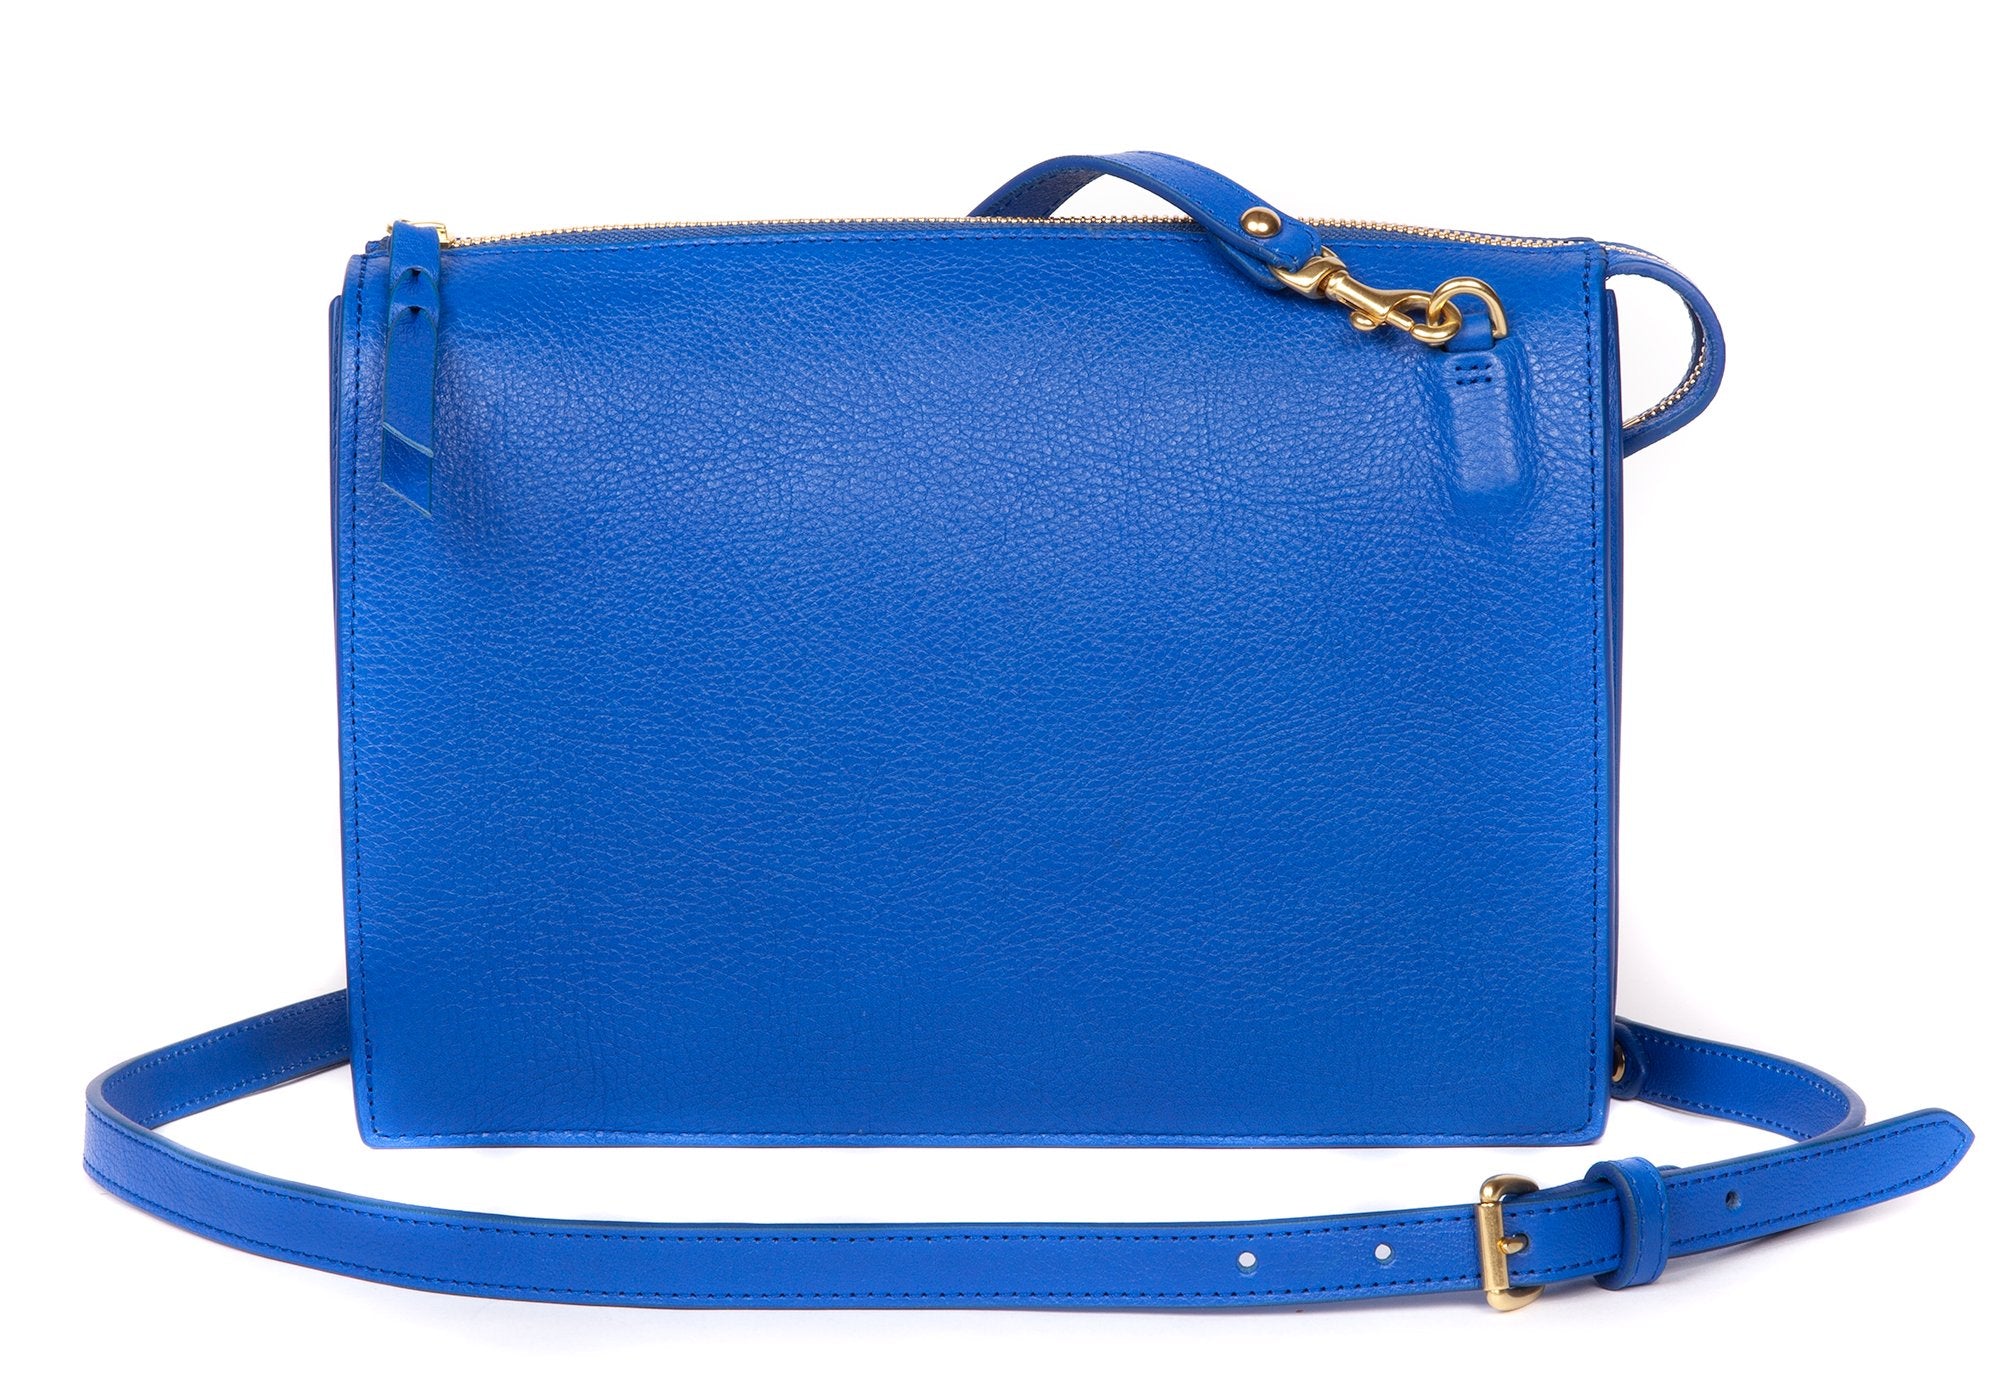 triple zipper jeans blue leather handbag — MUSEUM OUTLETS